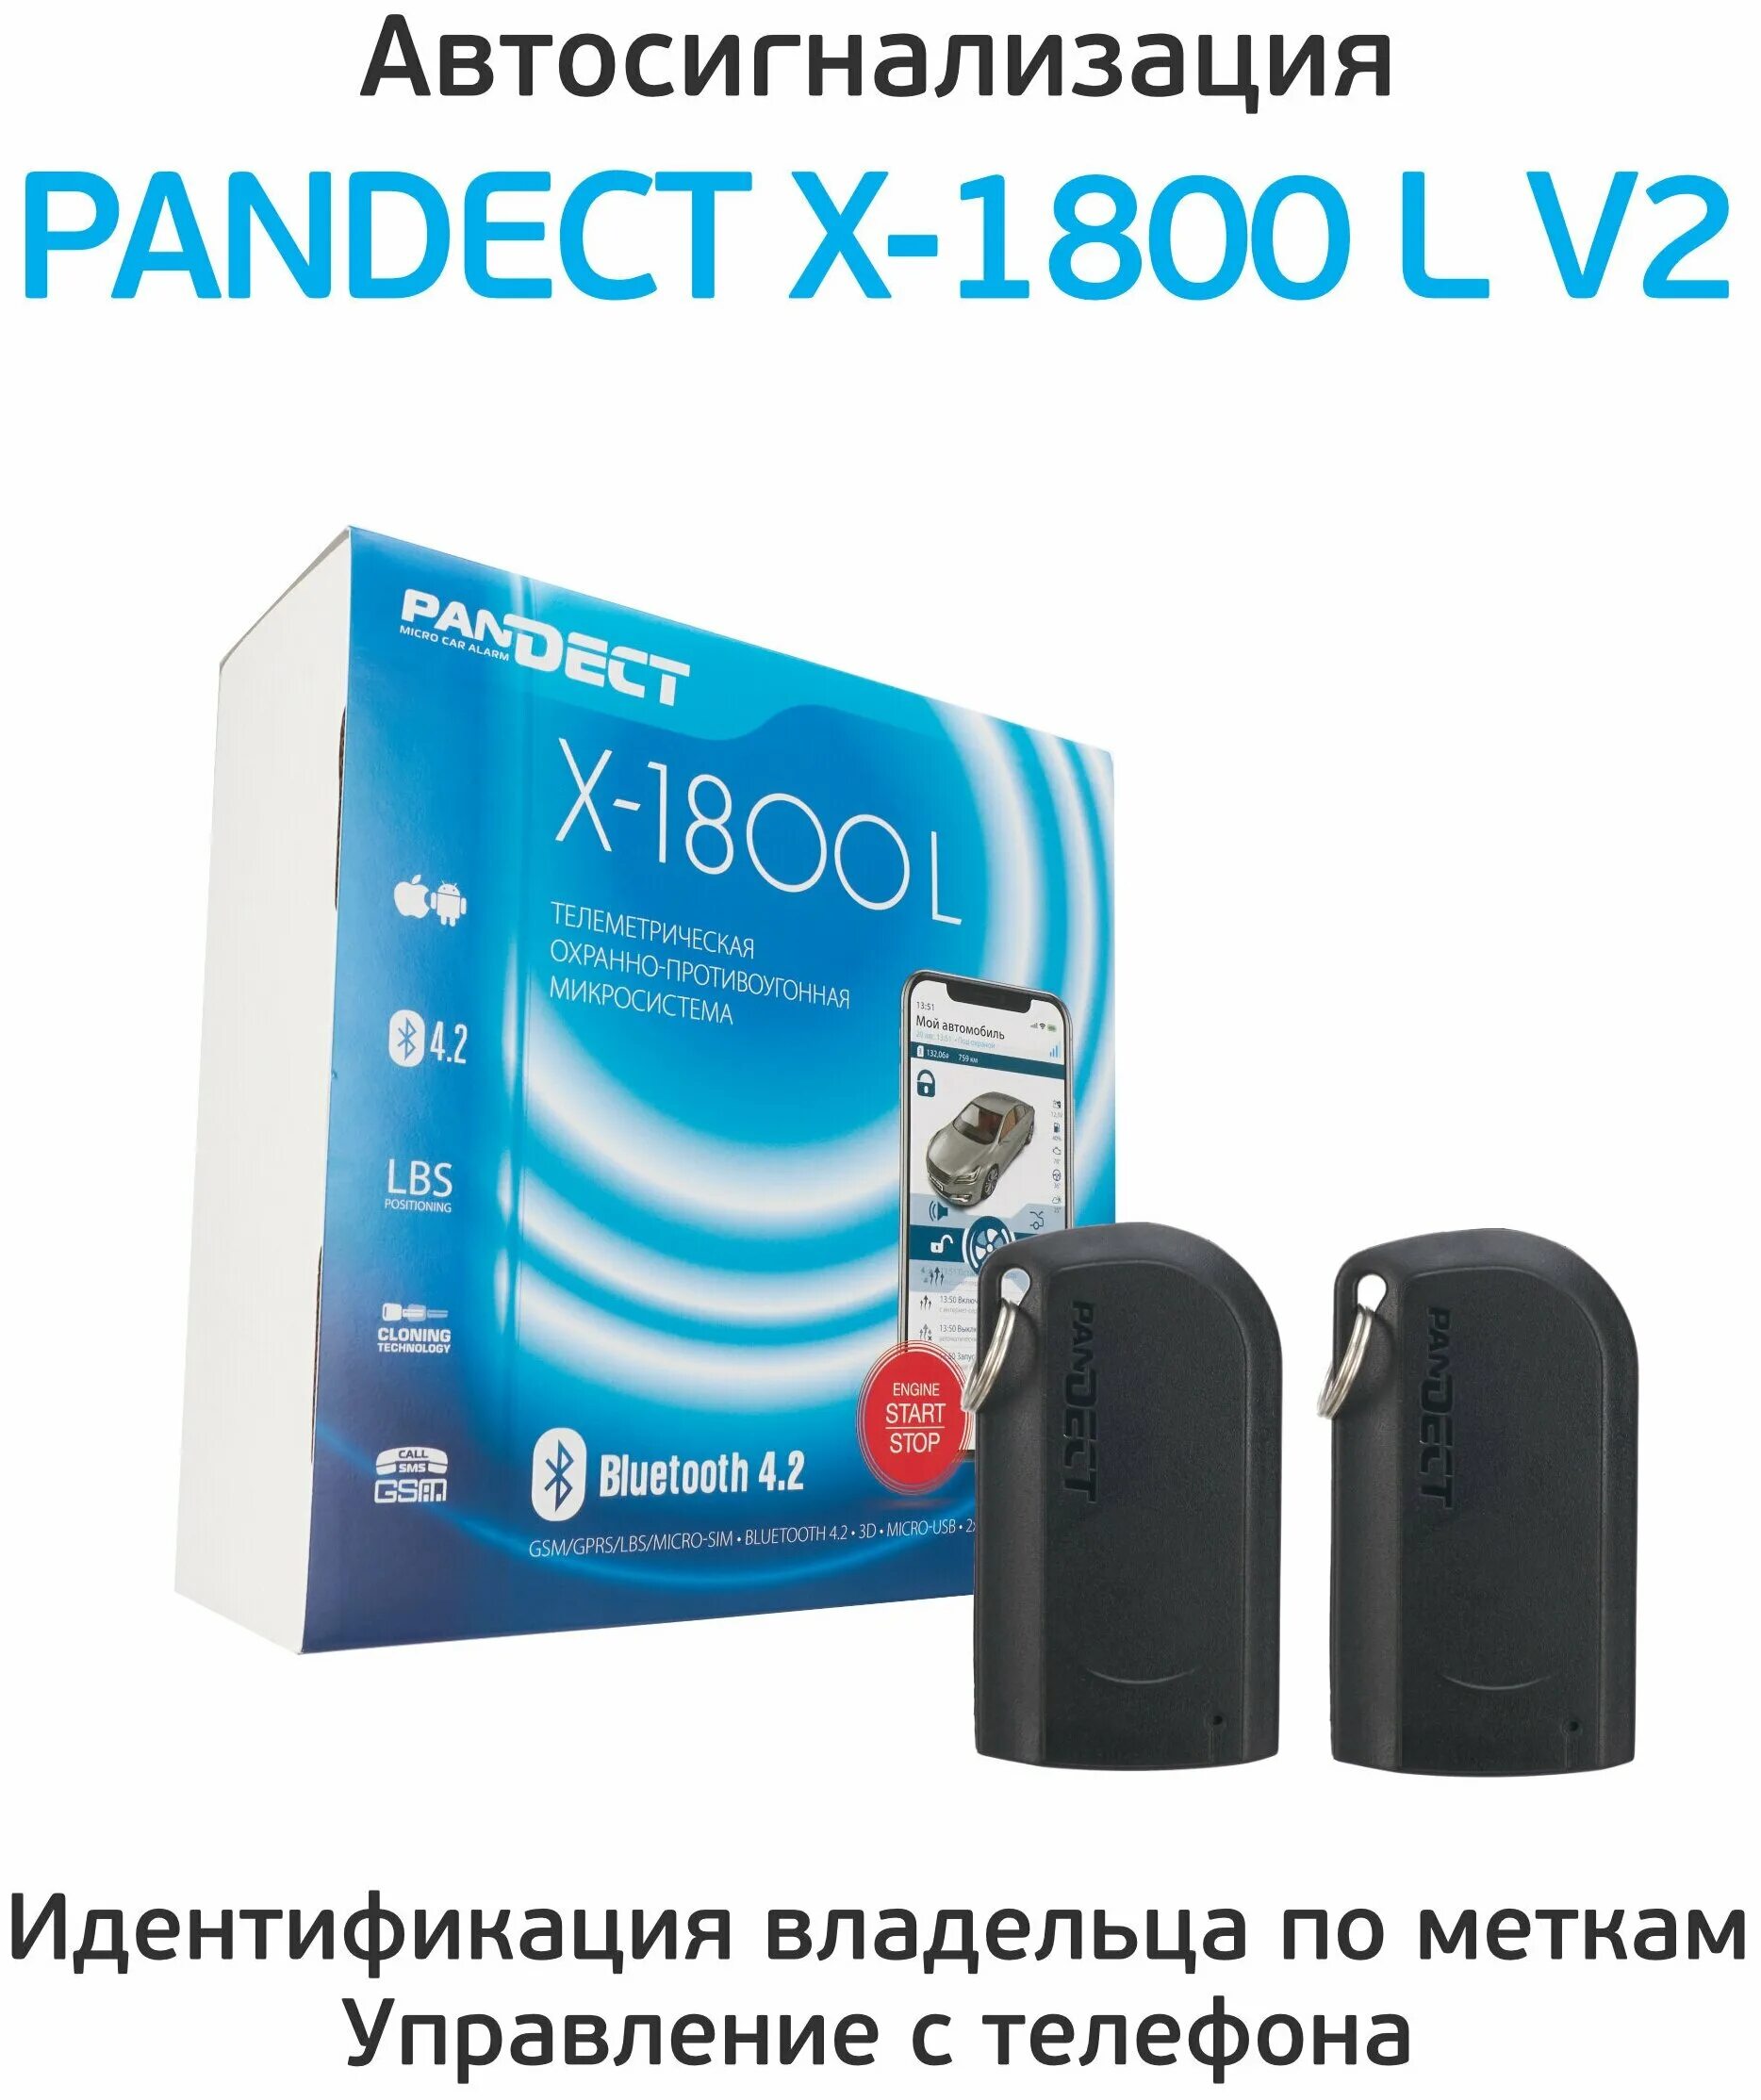 Pandect x-1800 l v2. Pandect x 1800l v2 автосигнализация. Сигнализация Pandect x-1800 l. Пандора x1811bt. Pandect 1800